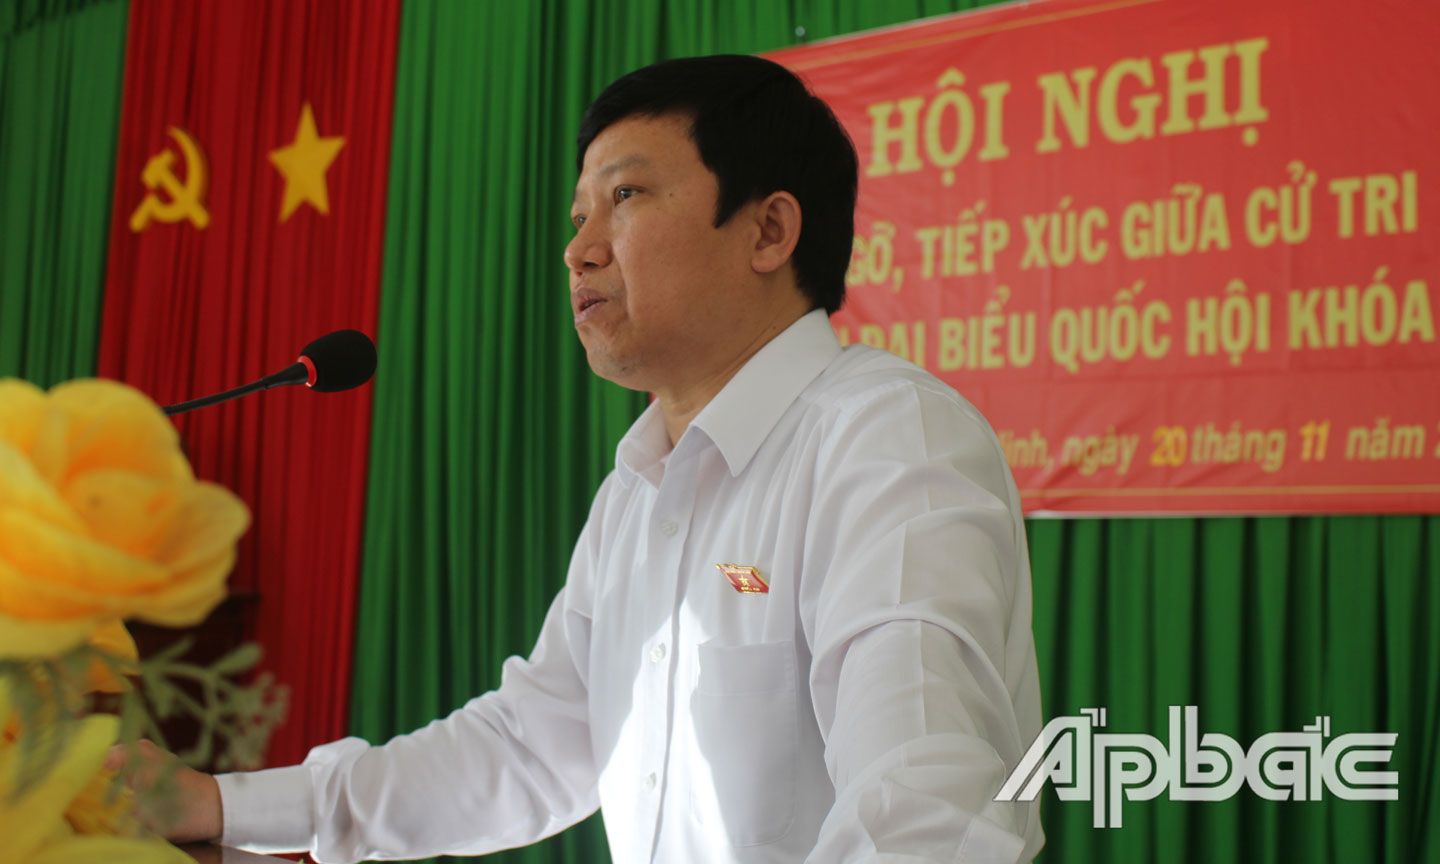 đại biểu Lê Quang Trí